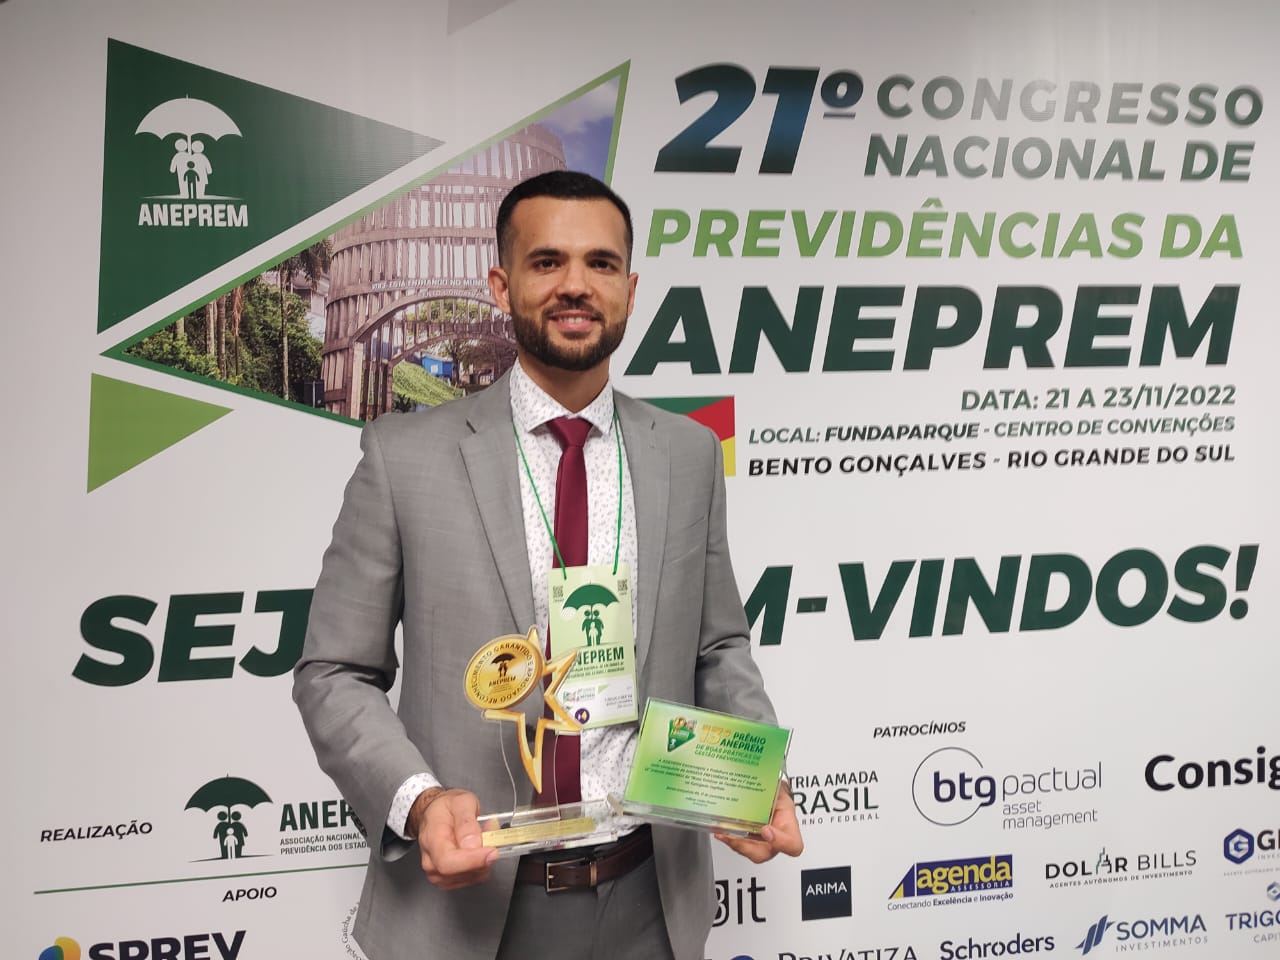 1º lugar de premiação nacional é concedido para a Manaus Previdência / Foto – Divulgação / Manaus Previdência